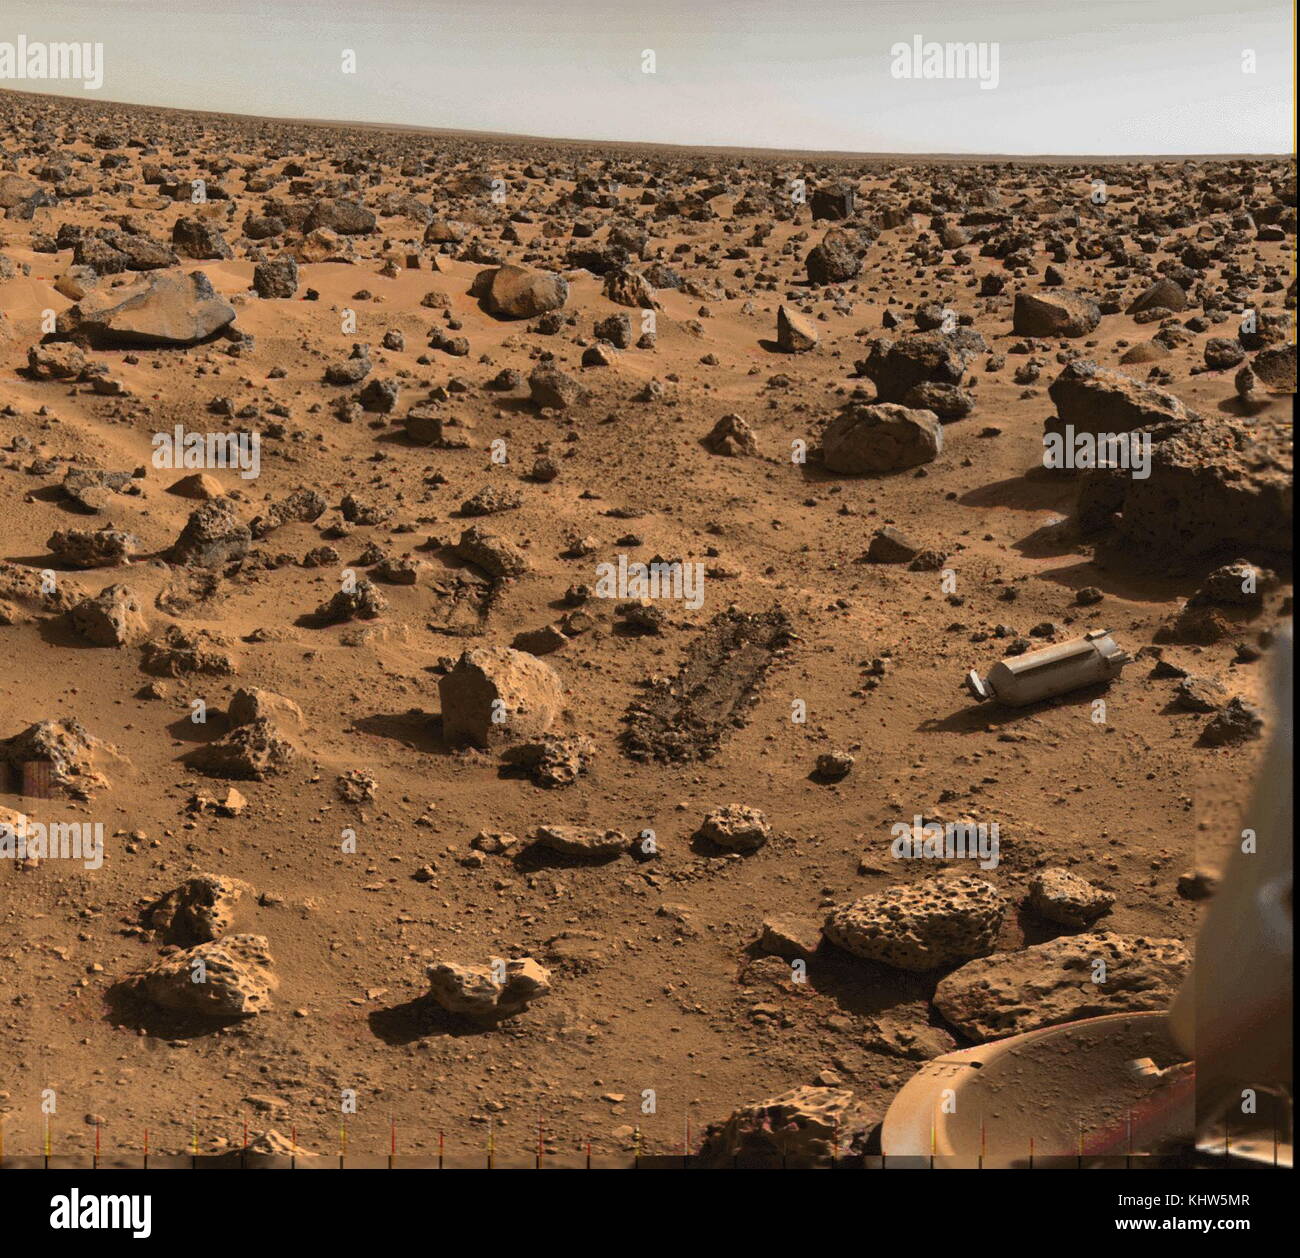 Fotografia Panoramica prese su Marte dalla Viking 2 Astrobiologia laboratorio sul campo, una navicella spaziale che è stato quello di condurre una ricerca di robotica per la vita su Marte. Recante la data del XXI secolo Foto Stock